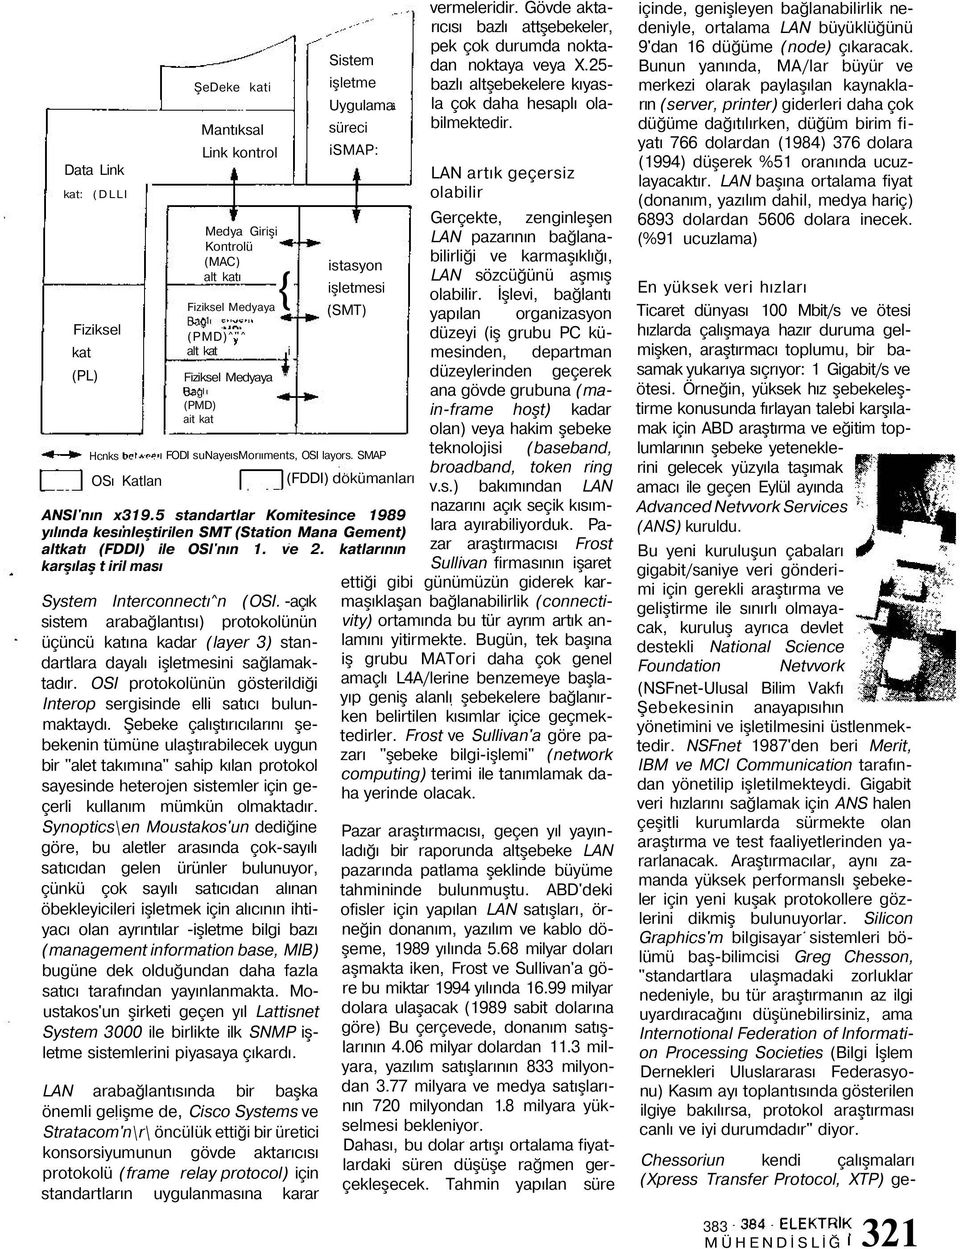 5 standartlar Komitesince 1989 yılında kesınleştirilen SMT (Station Mana Gement) altkatı (FDDI) ile OSl'nın 1. ve 2. katlarının karşılaş t iril ması System Interconnectı^n (OSI.